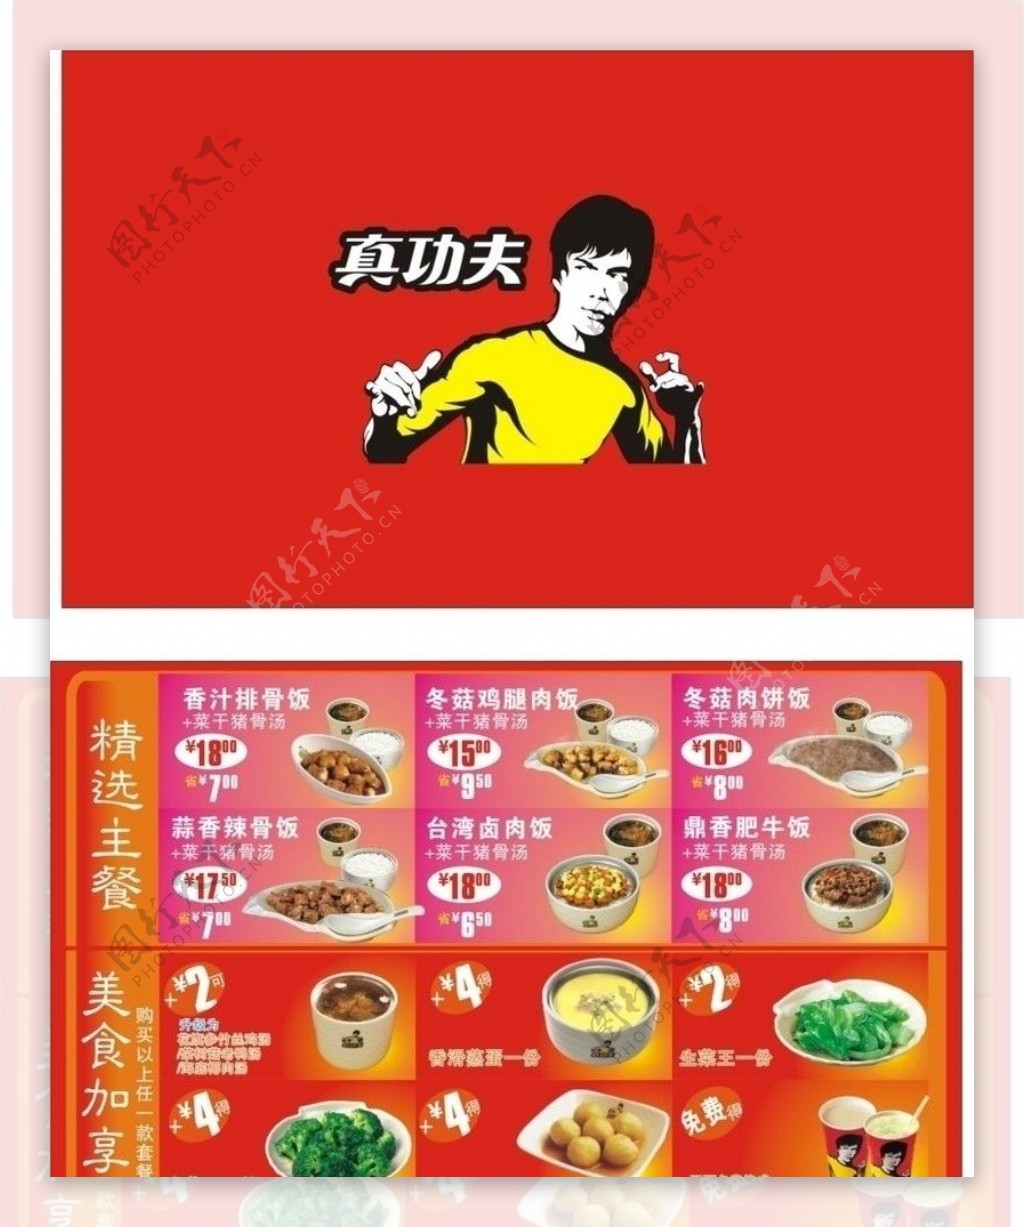 中式快餐真功夫品牌形象升级成功